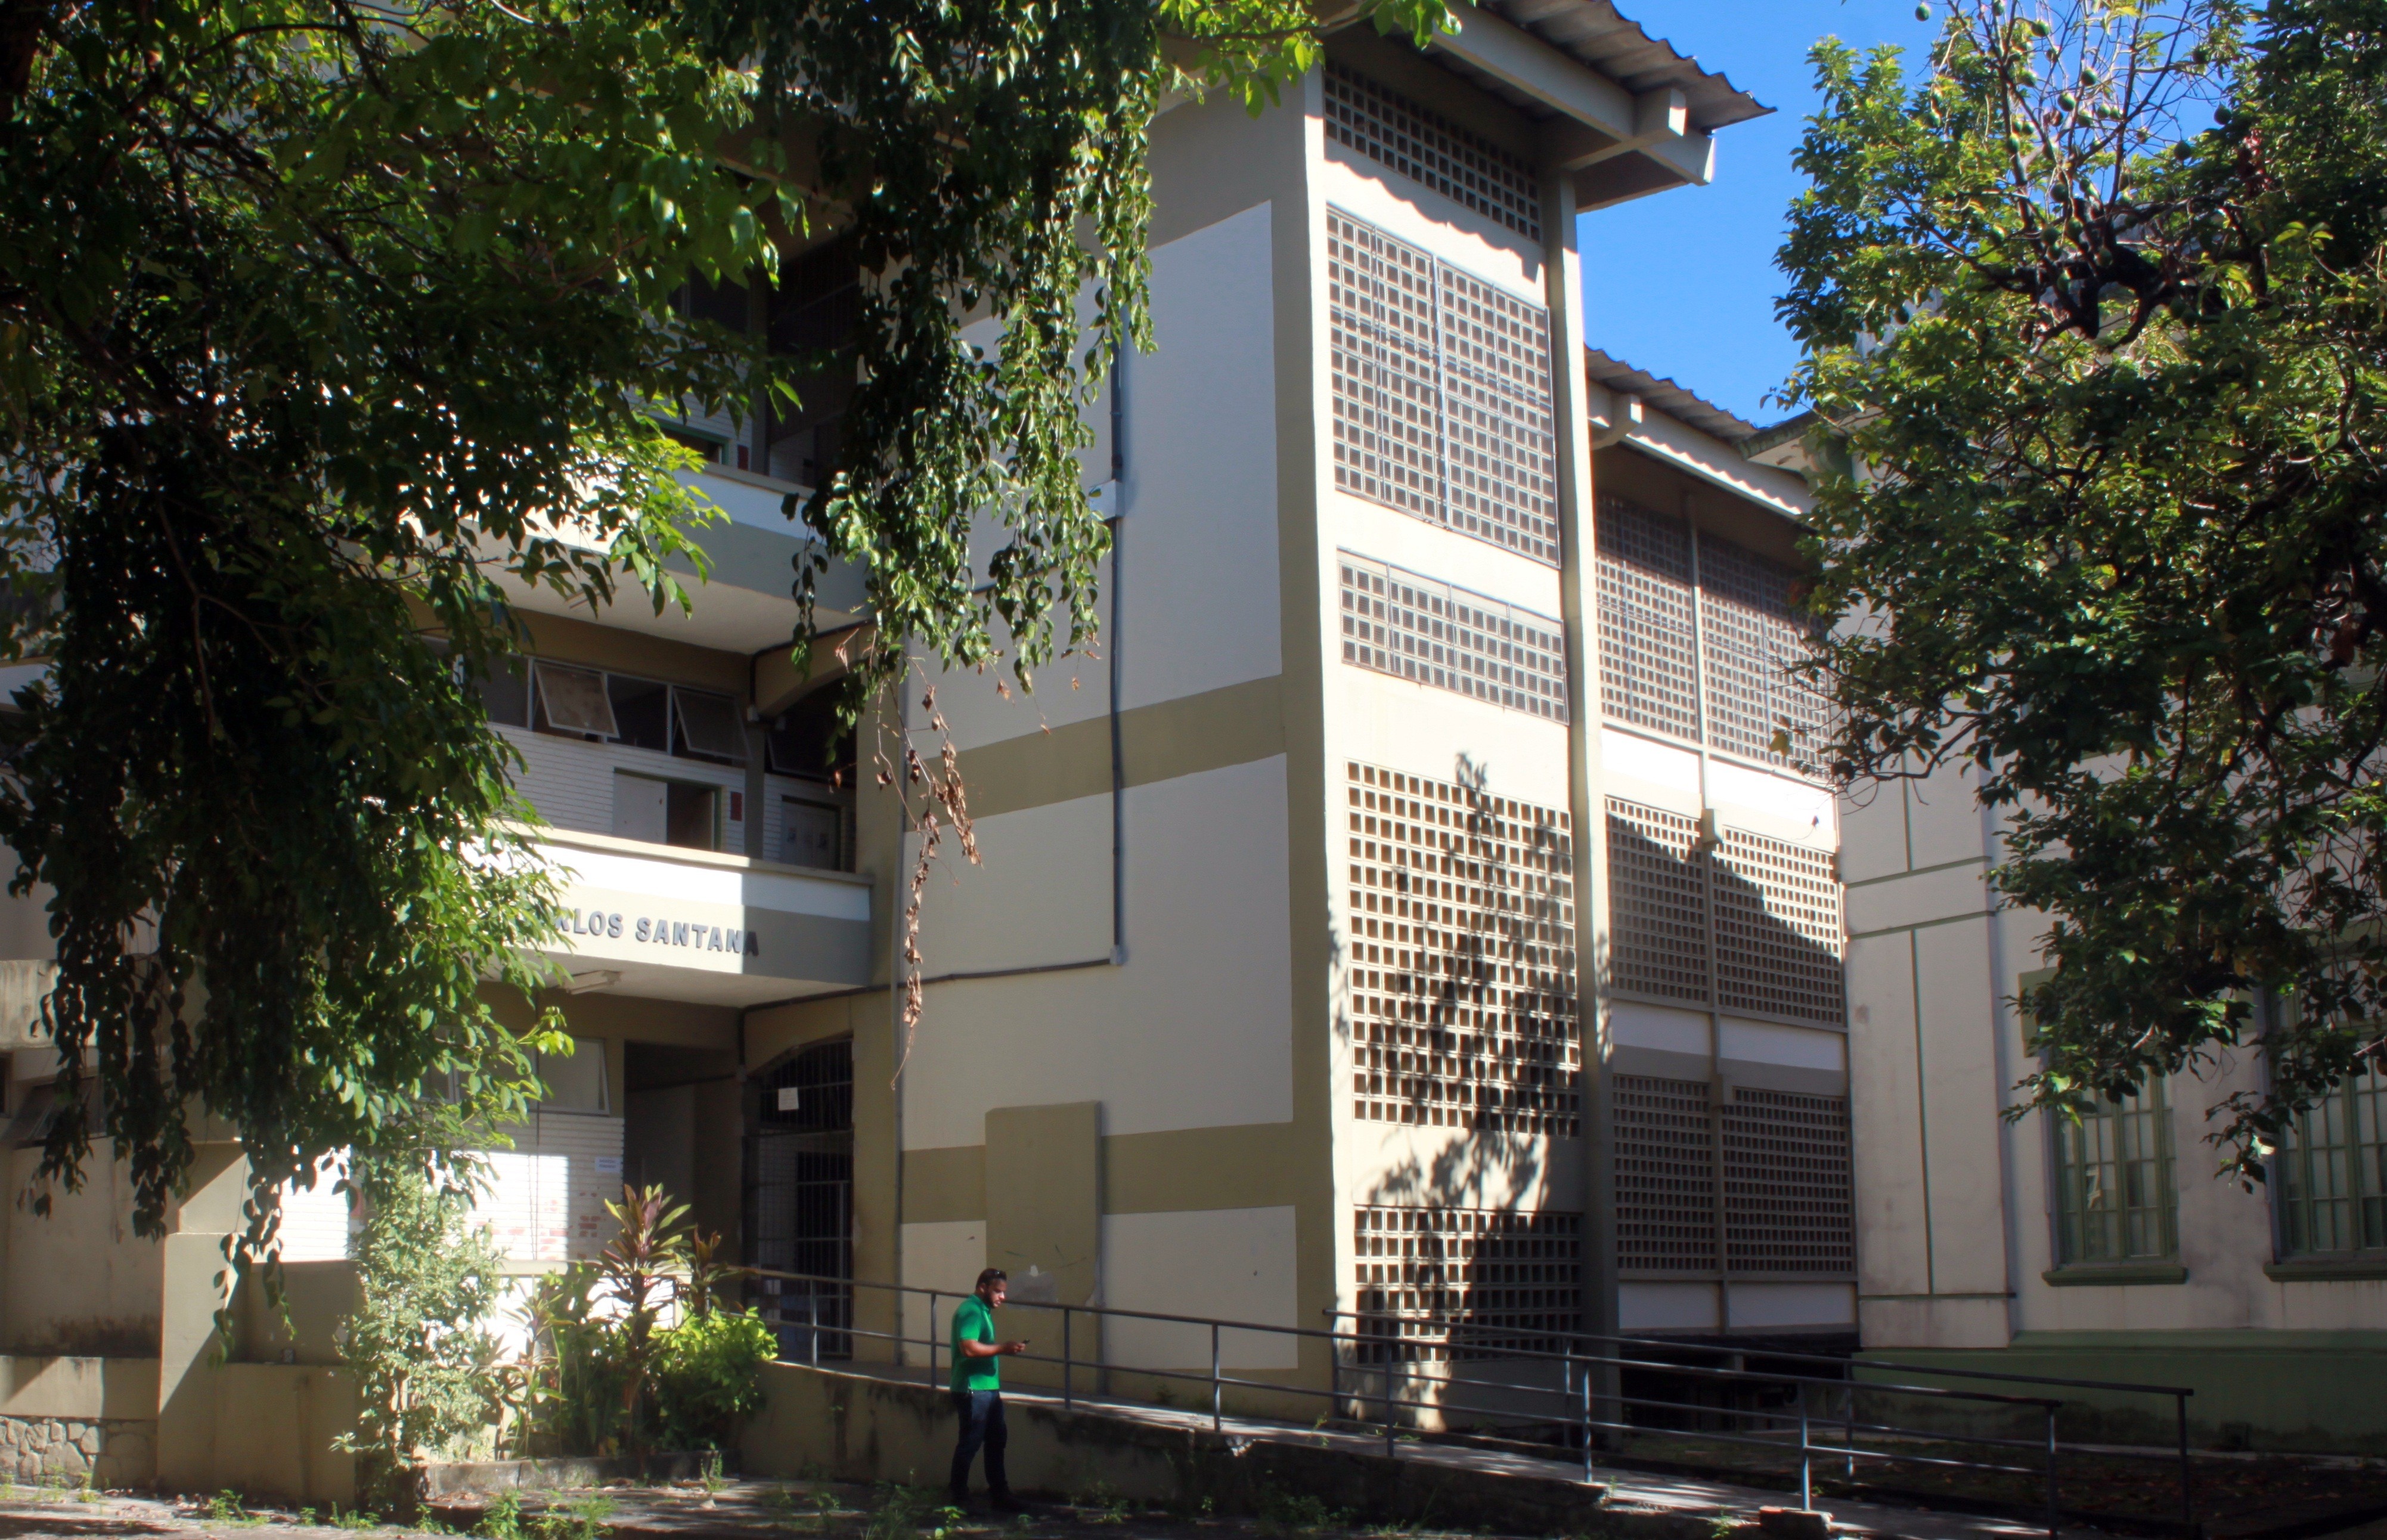 Pavilhão Carlos Santana, onde irá funcionar o Centro de Referência Dois Julho do IF Baiano.